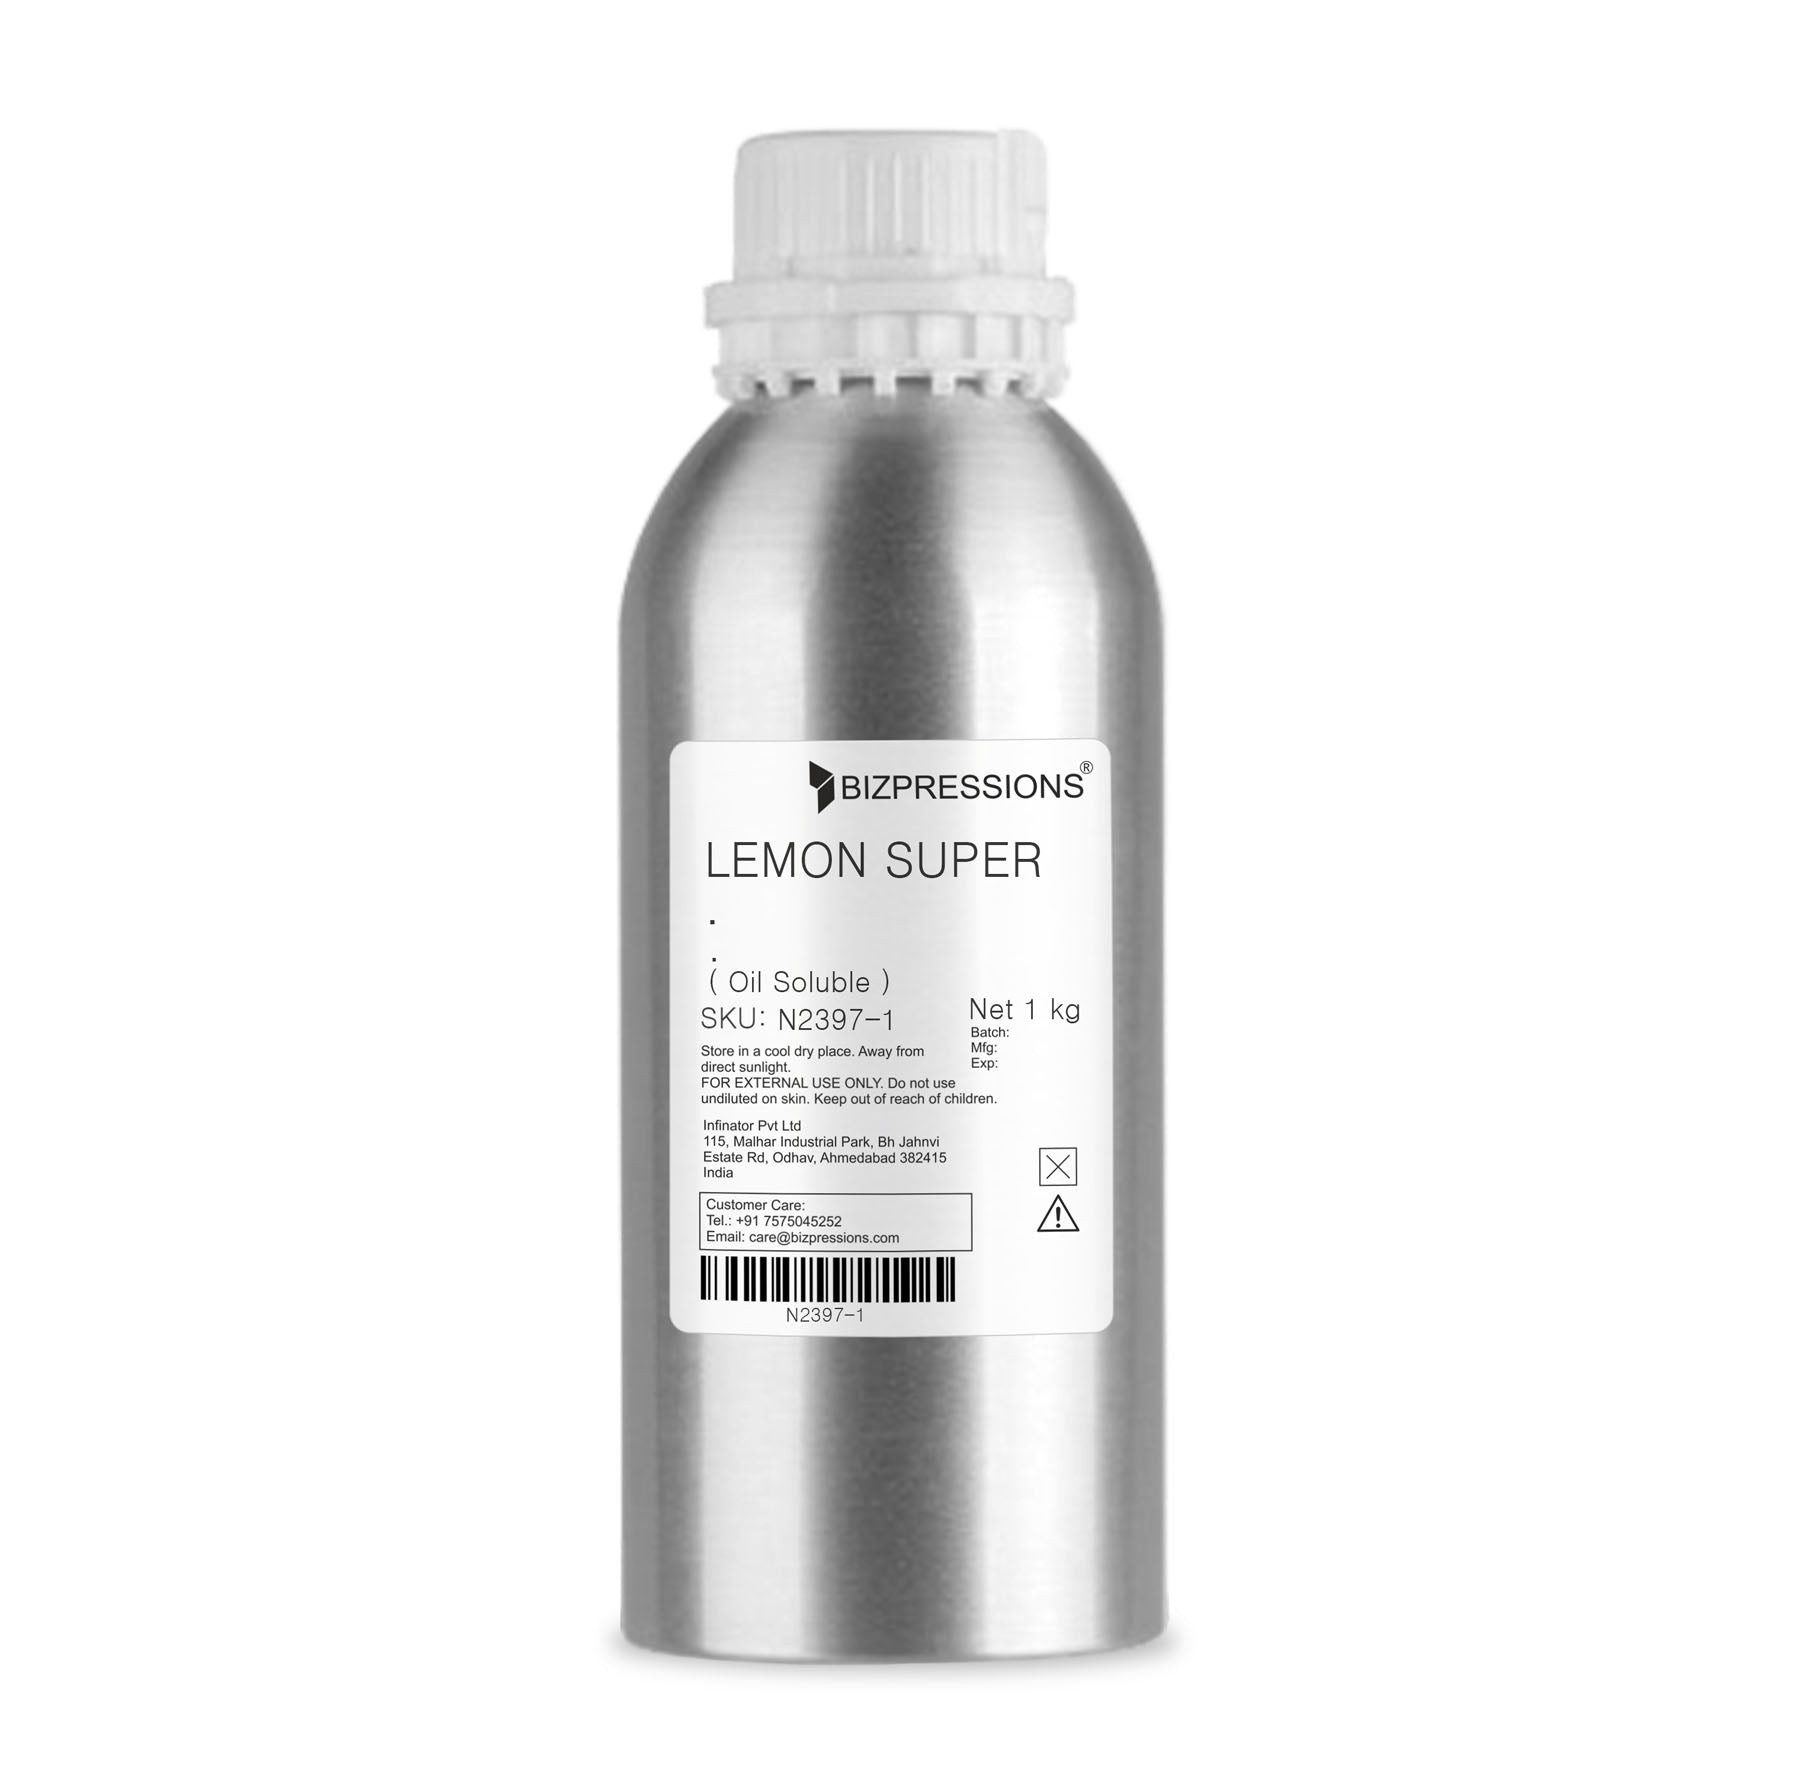 LEMON SUPER - Fragrance ( Oil Soluble ) - 1 kg